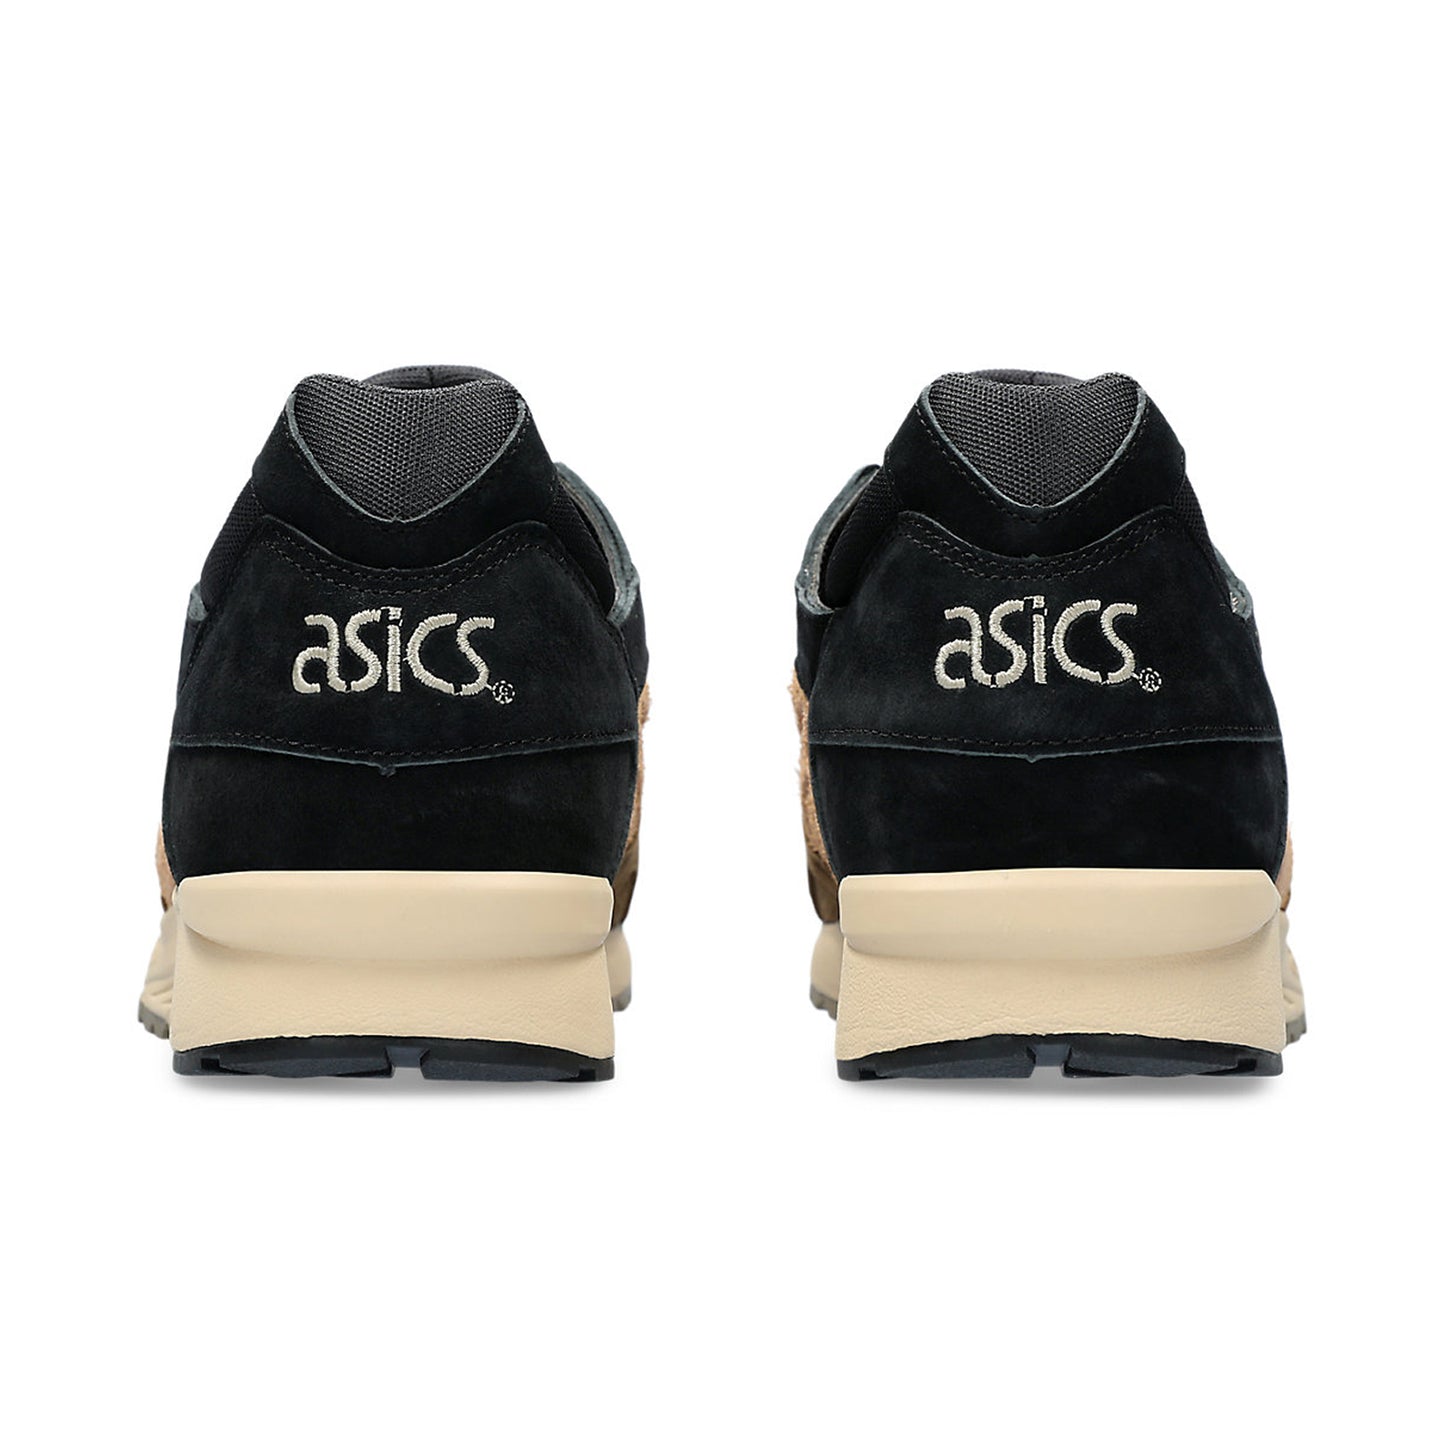 ASICS Gel-Lyte V Black Pepper Sneakers